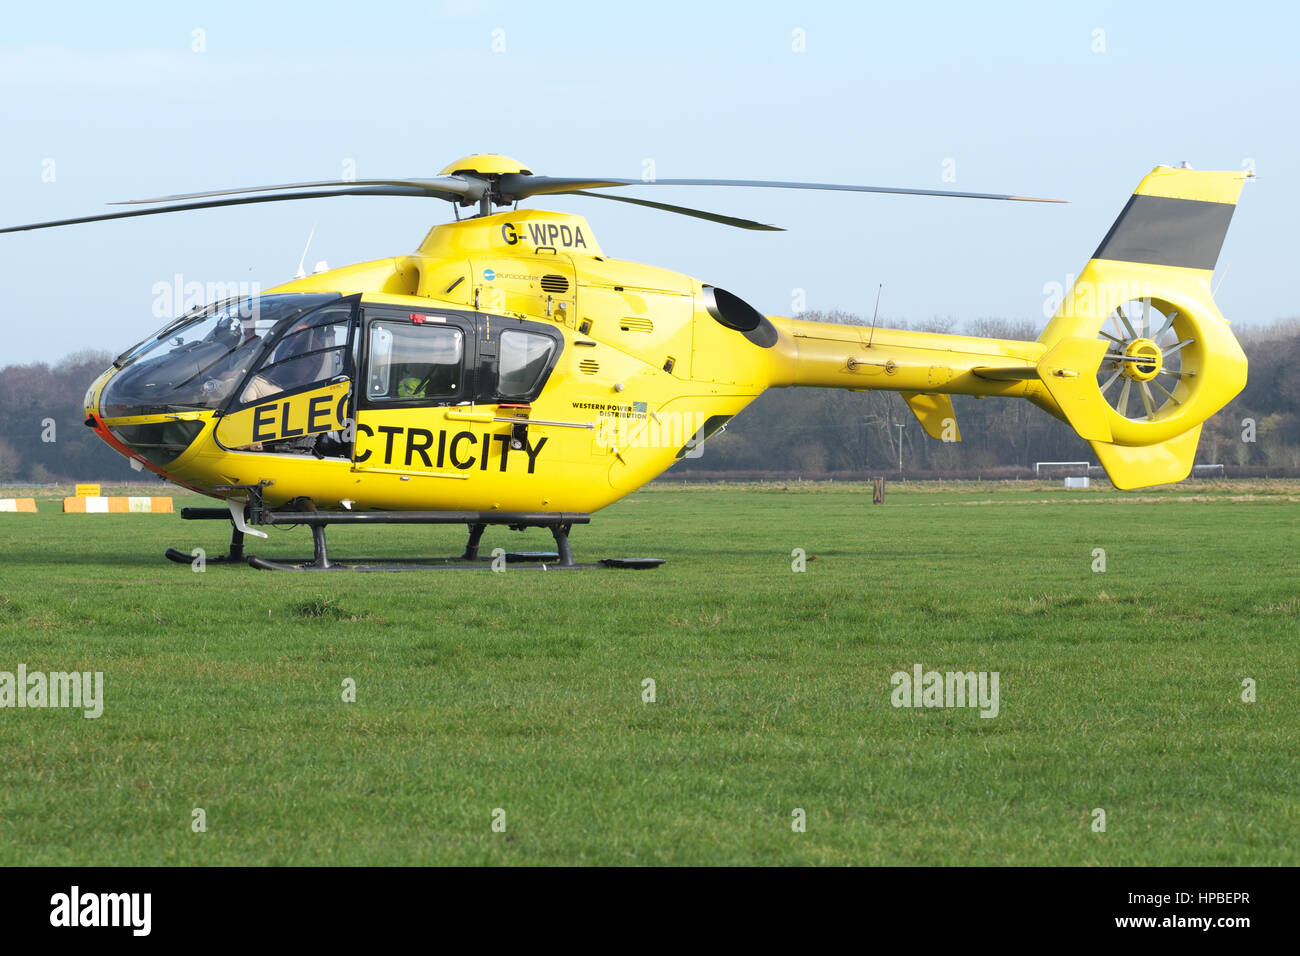 Eurocopter EC 135 Hubschrauber verwendet für Strom Stromversorgung Überprüfung durch Western Power Distribution WPD in UK Stockfoto